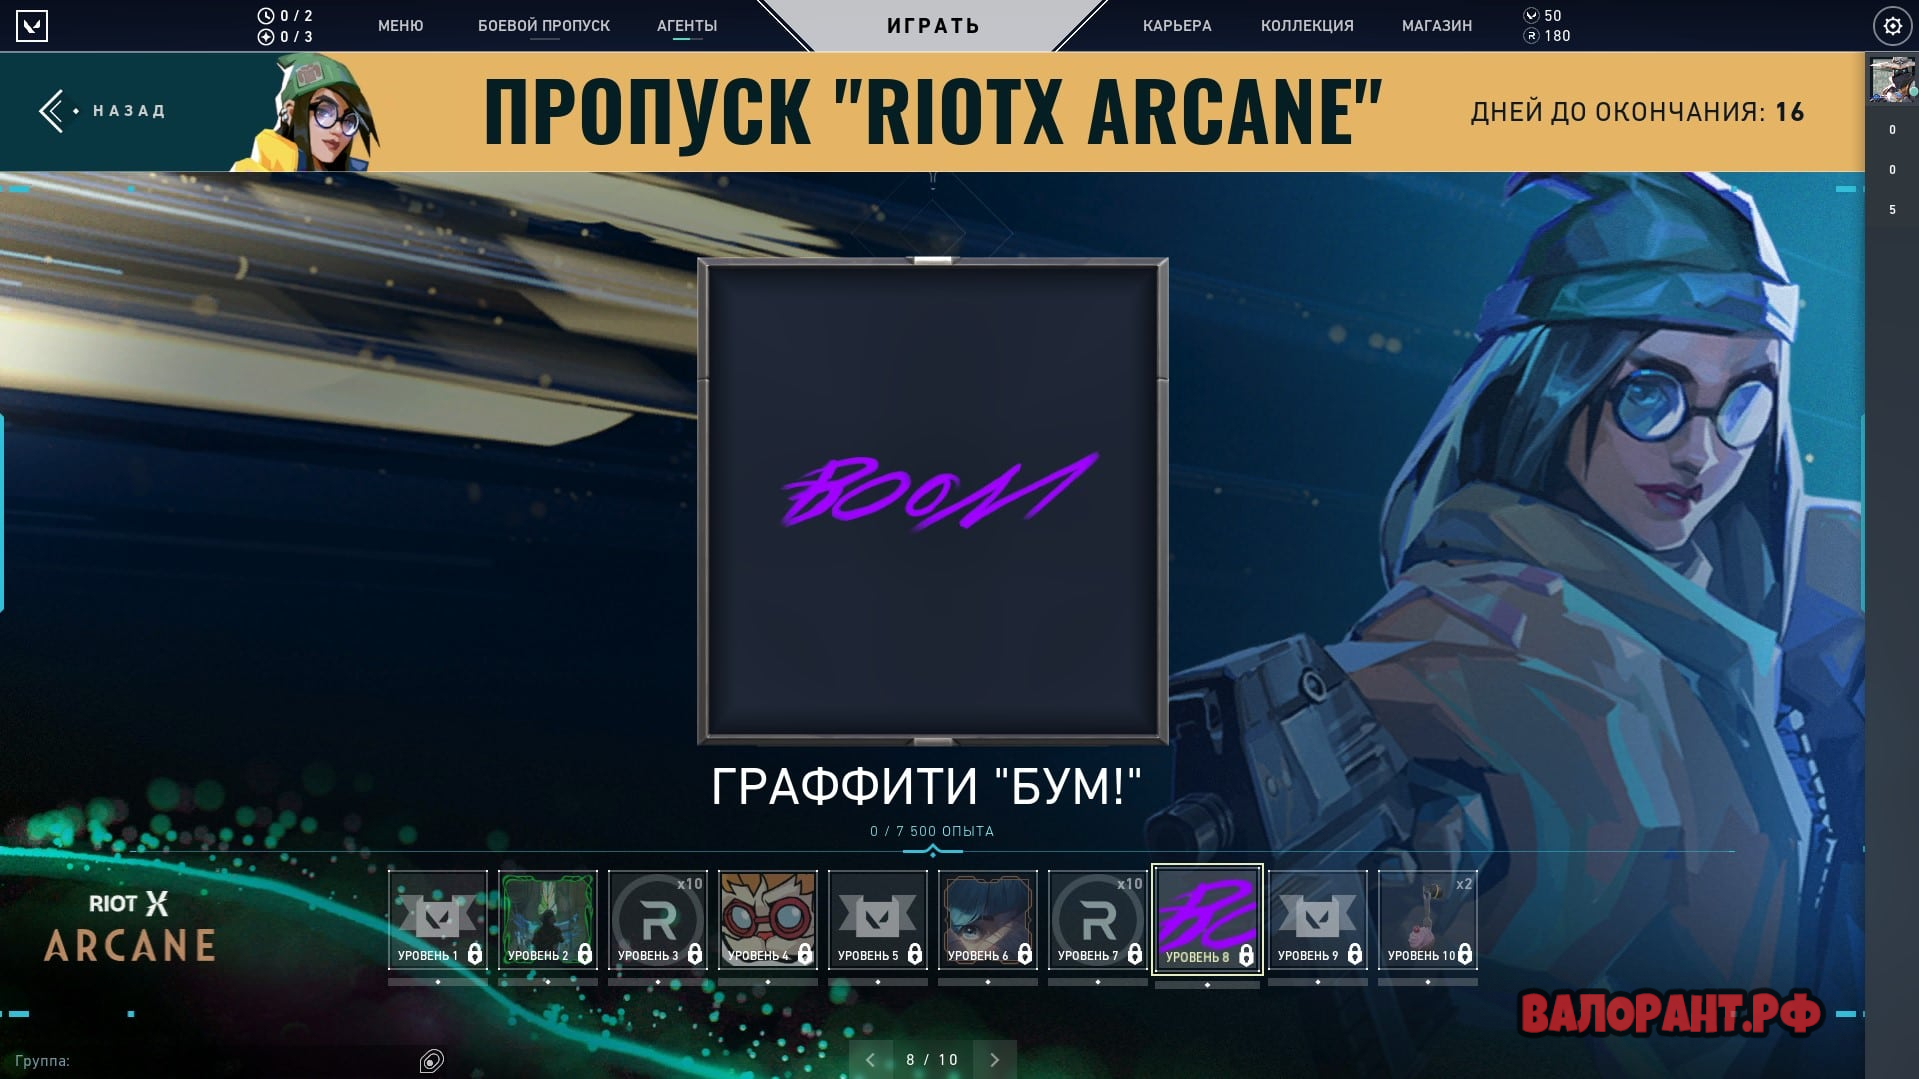 Propusk RiotX Arcane Graffiti Bum - Новое событие в Валорант - RiotX Arcane